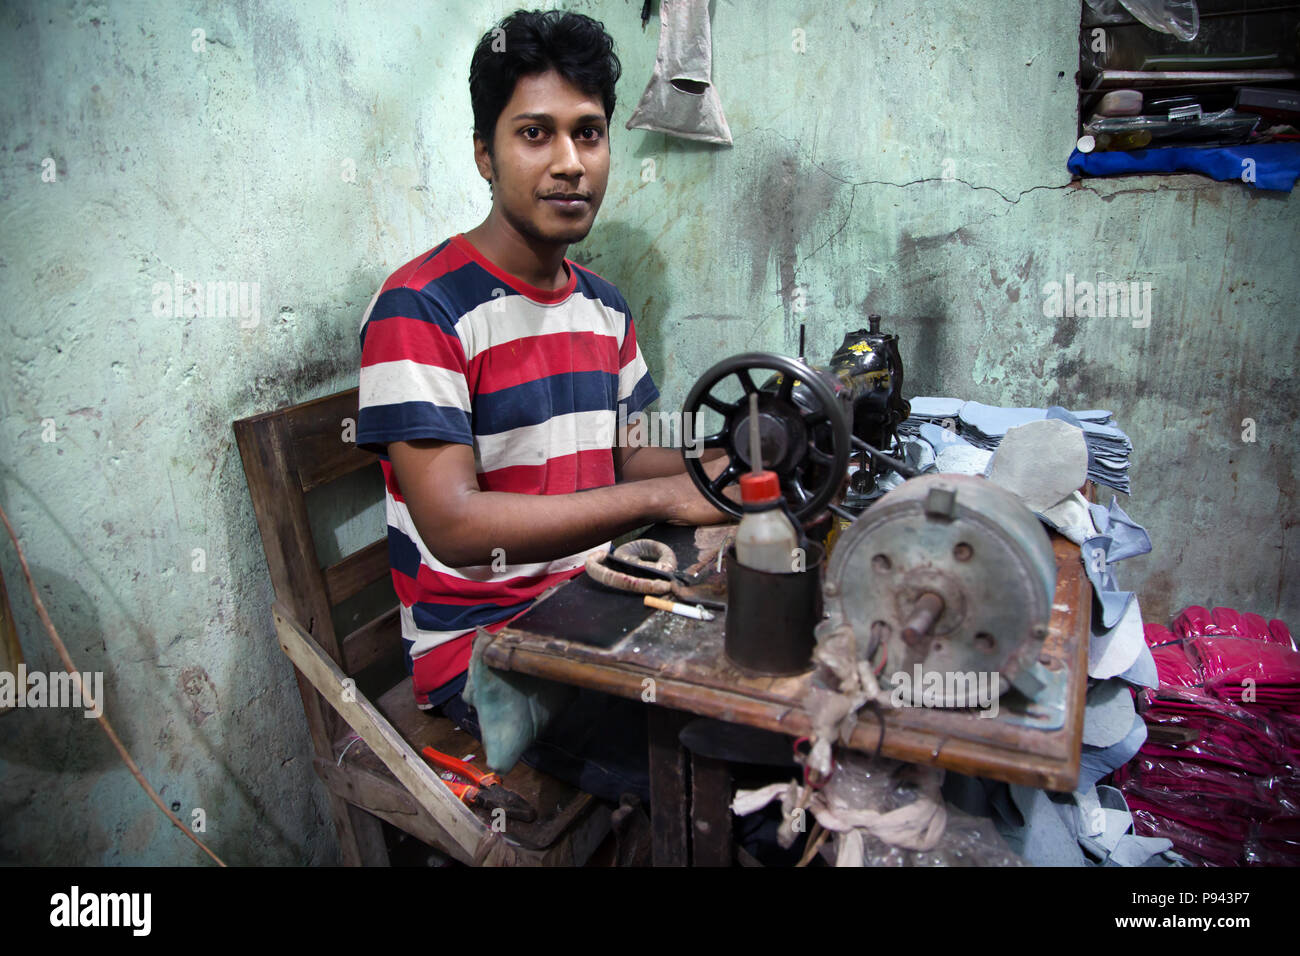 Travailleur de Hazaribagh, usines de cuir / quartier des tanneries, Dhaka, Bangladesh Banque D'Images